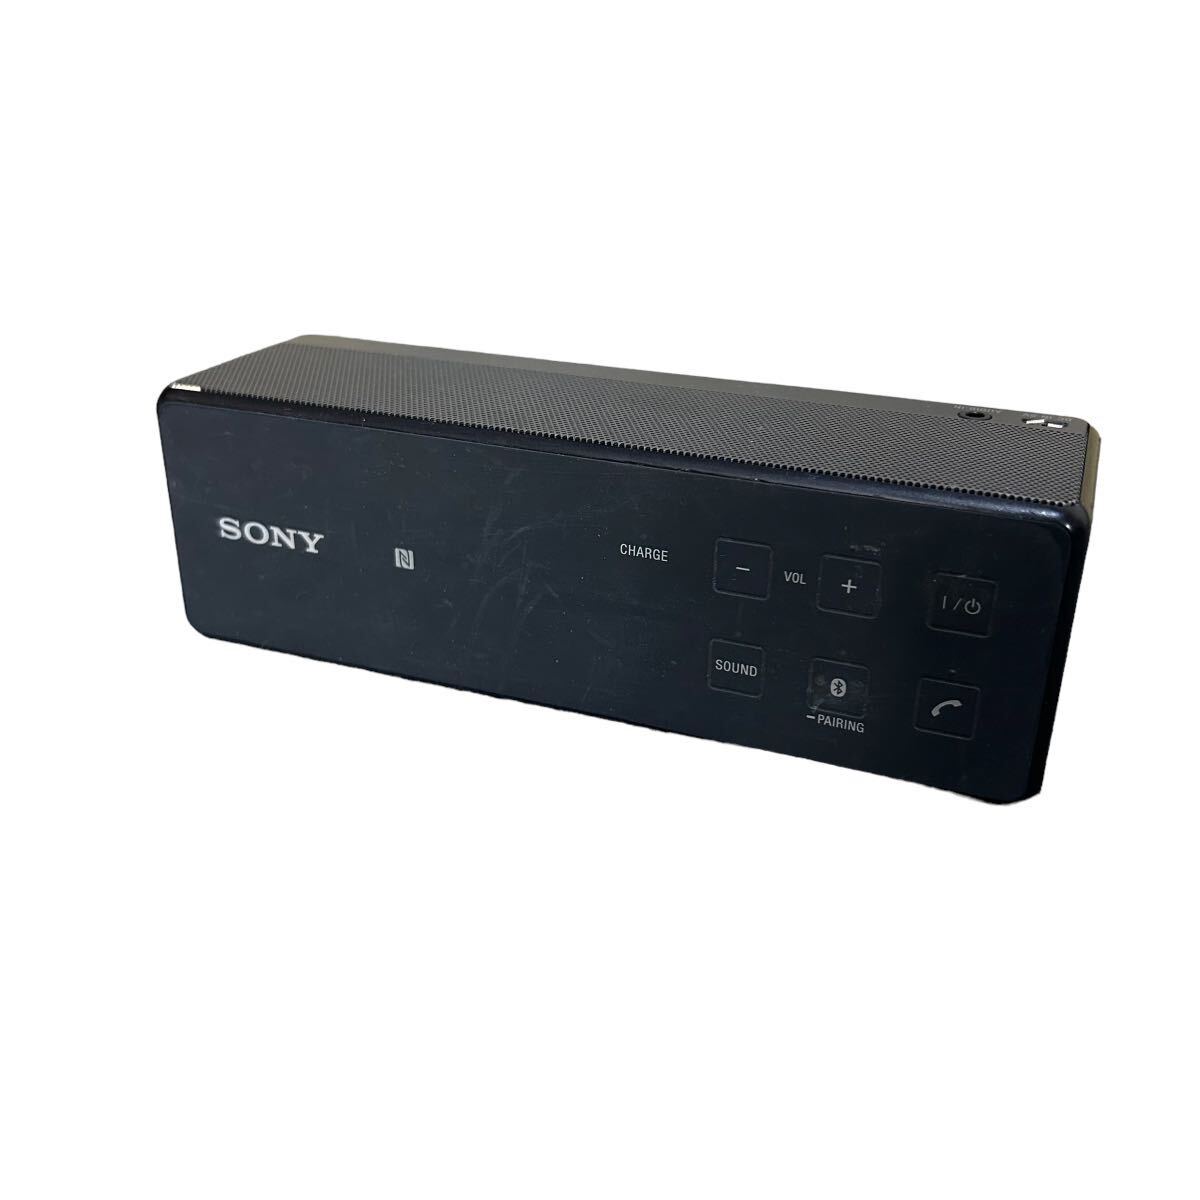 ソニー SRS-X33 SONY Bluetooth ワイヤレスポータブルスピーカー パーソナルオーディオシステム ブラック 2015年製_画像1